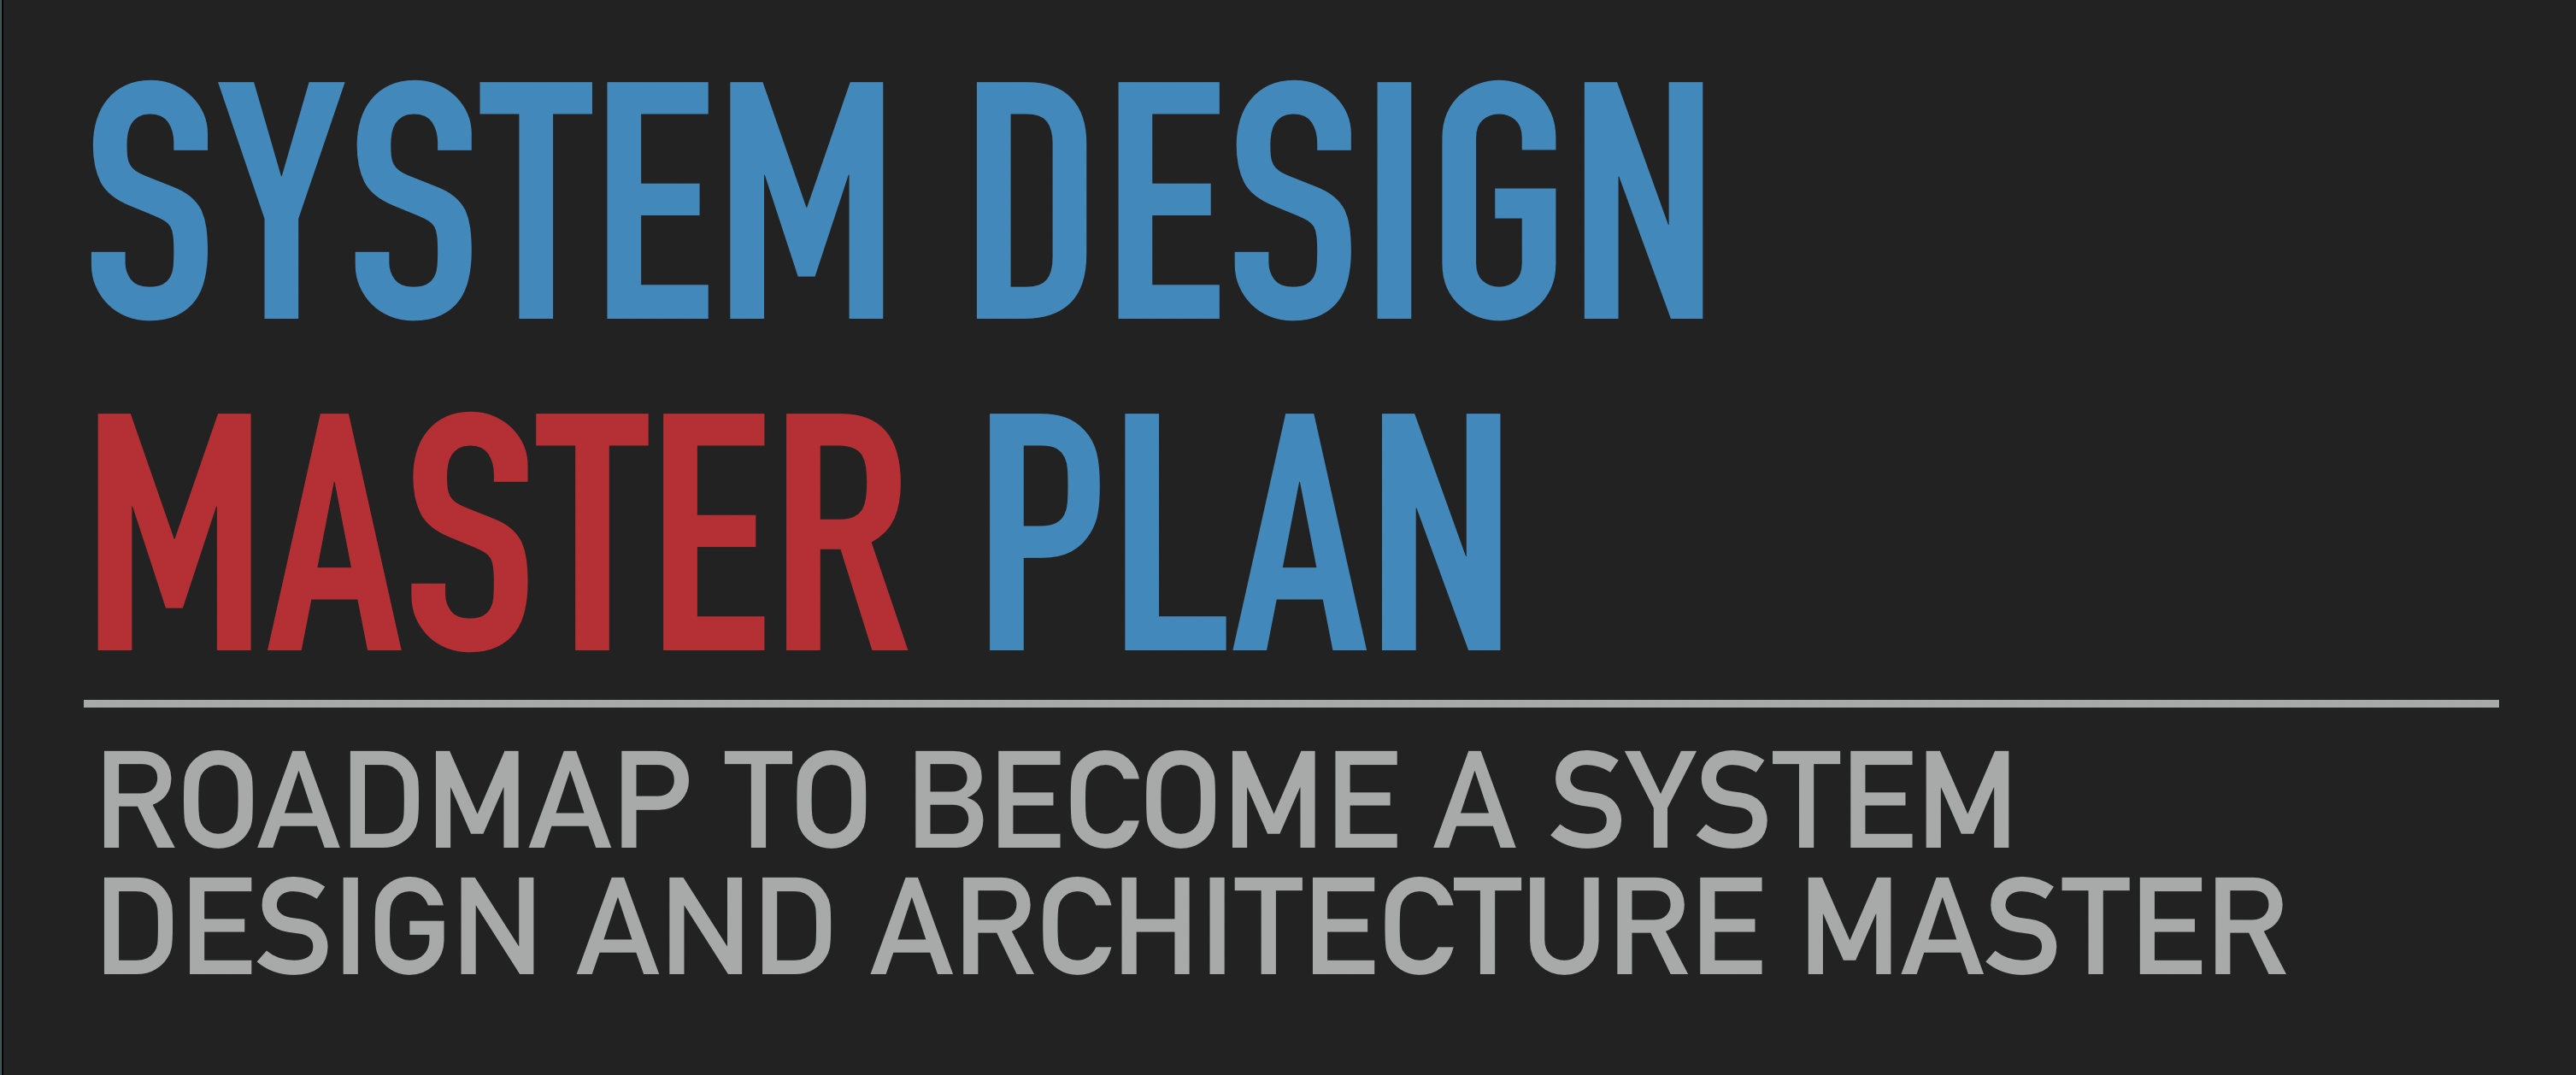 system-design-header.png